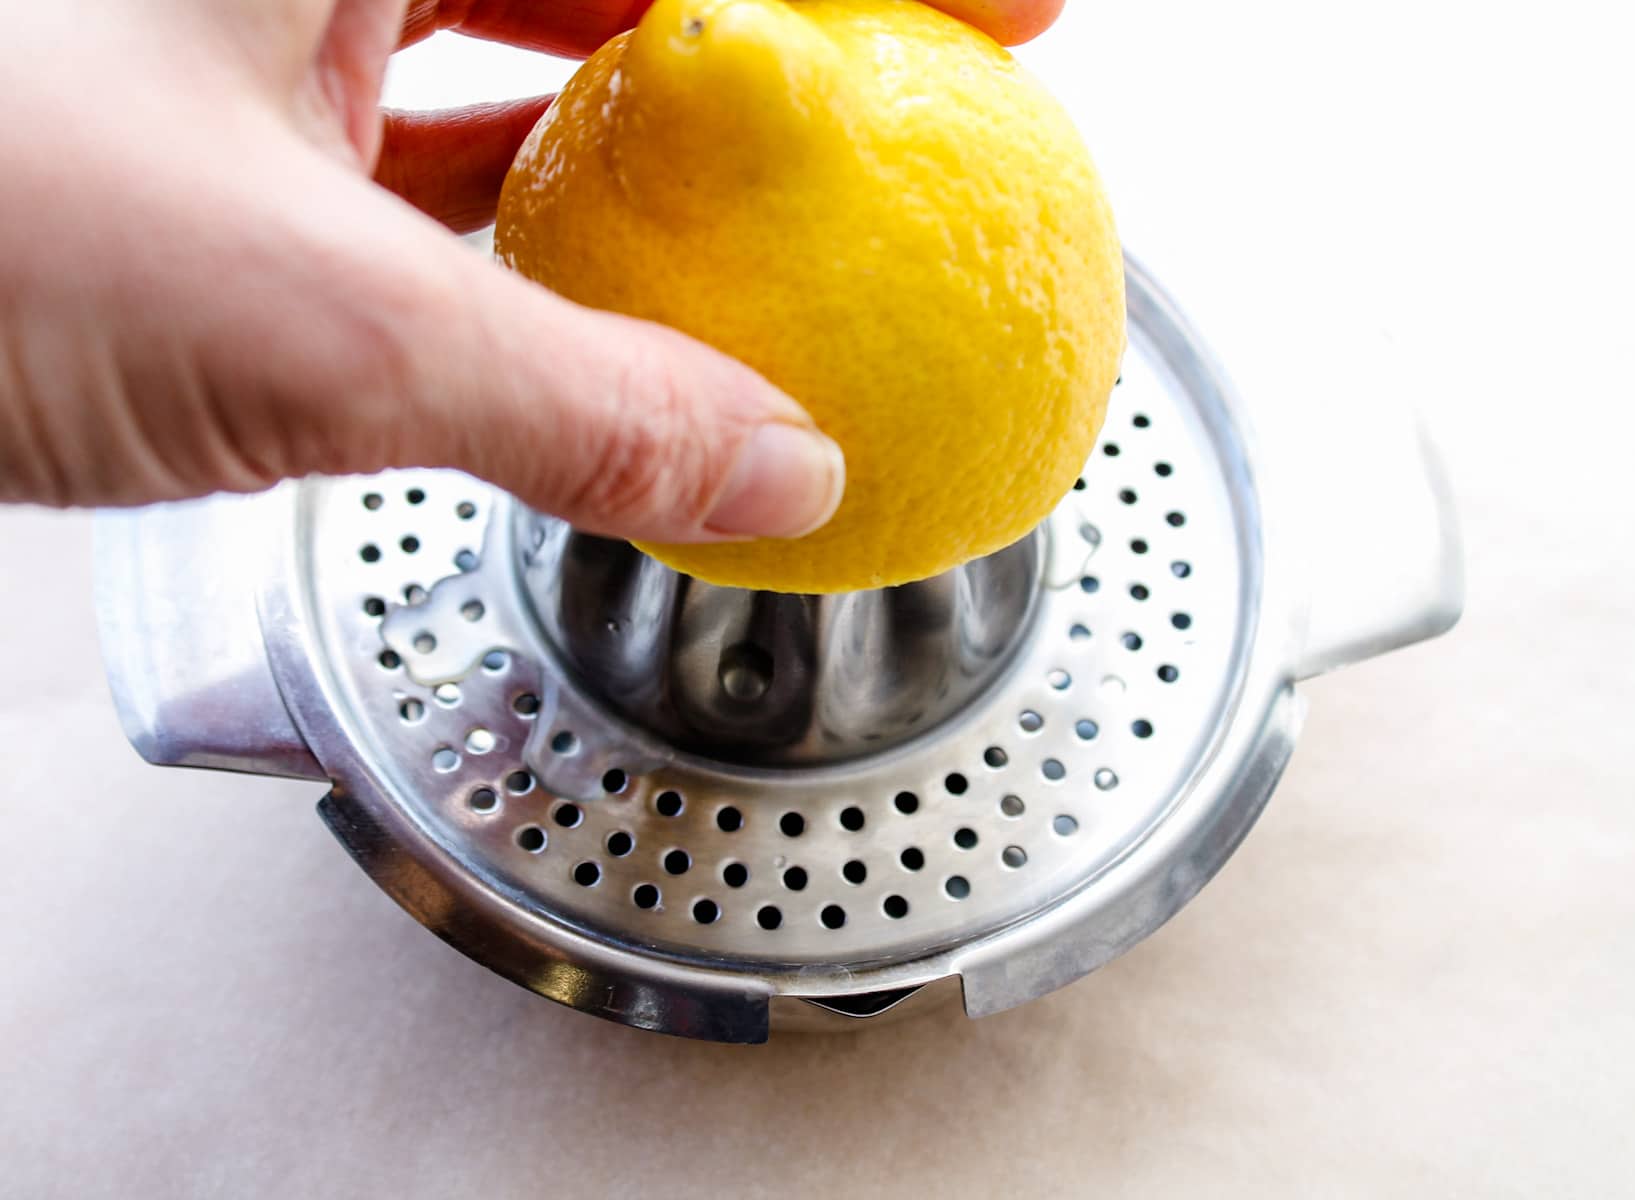 a lemon being juiced.